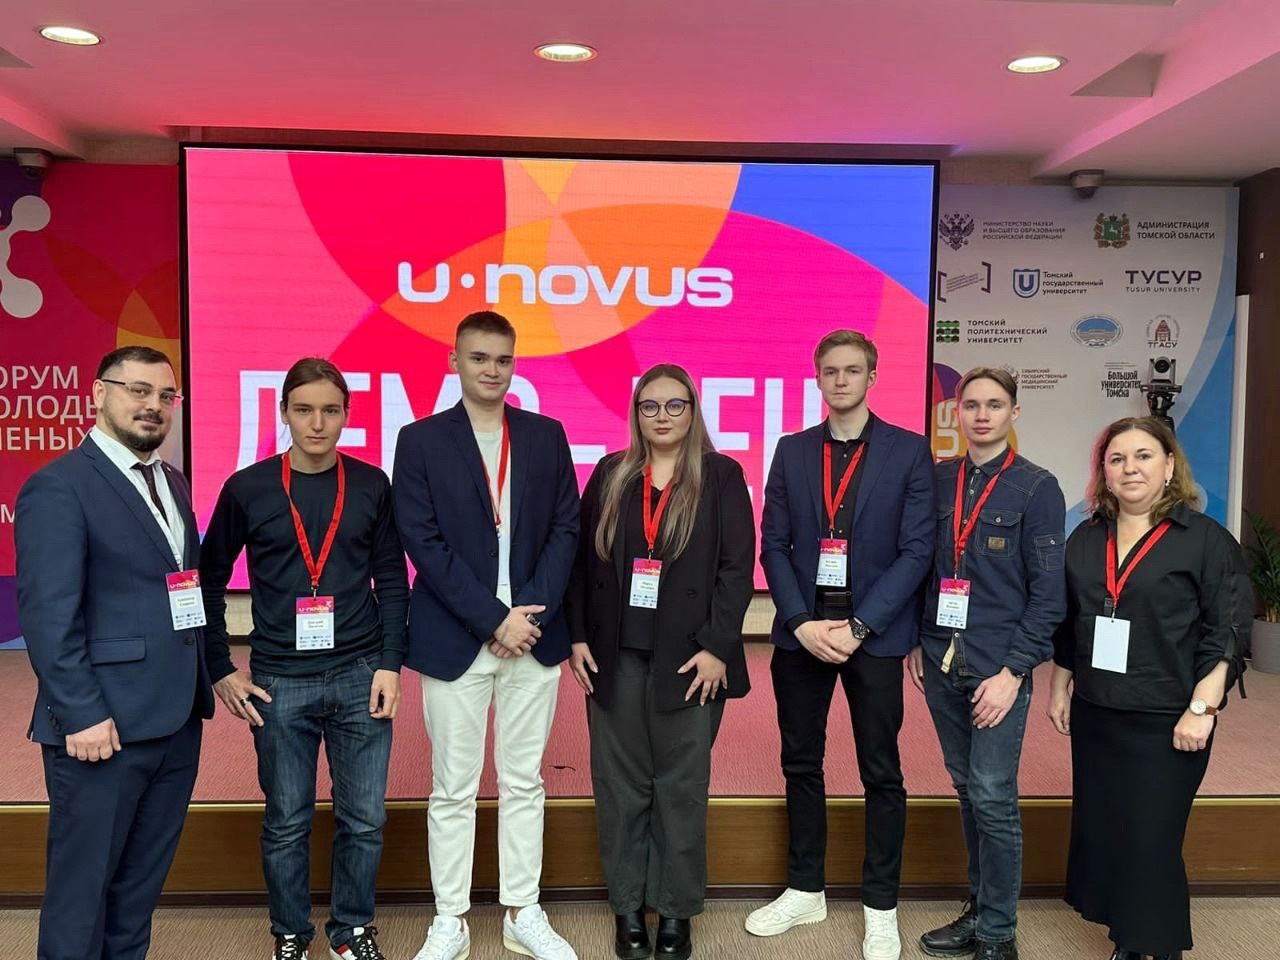 Молодые предприниматели СибГМУ могут принять участие в конкурсе стартапов форума U-NOVUS